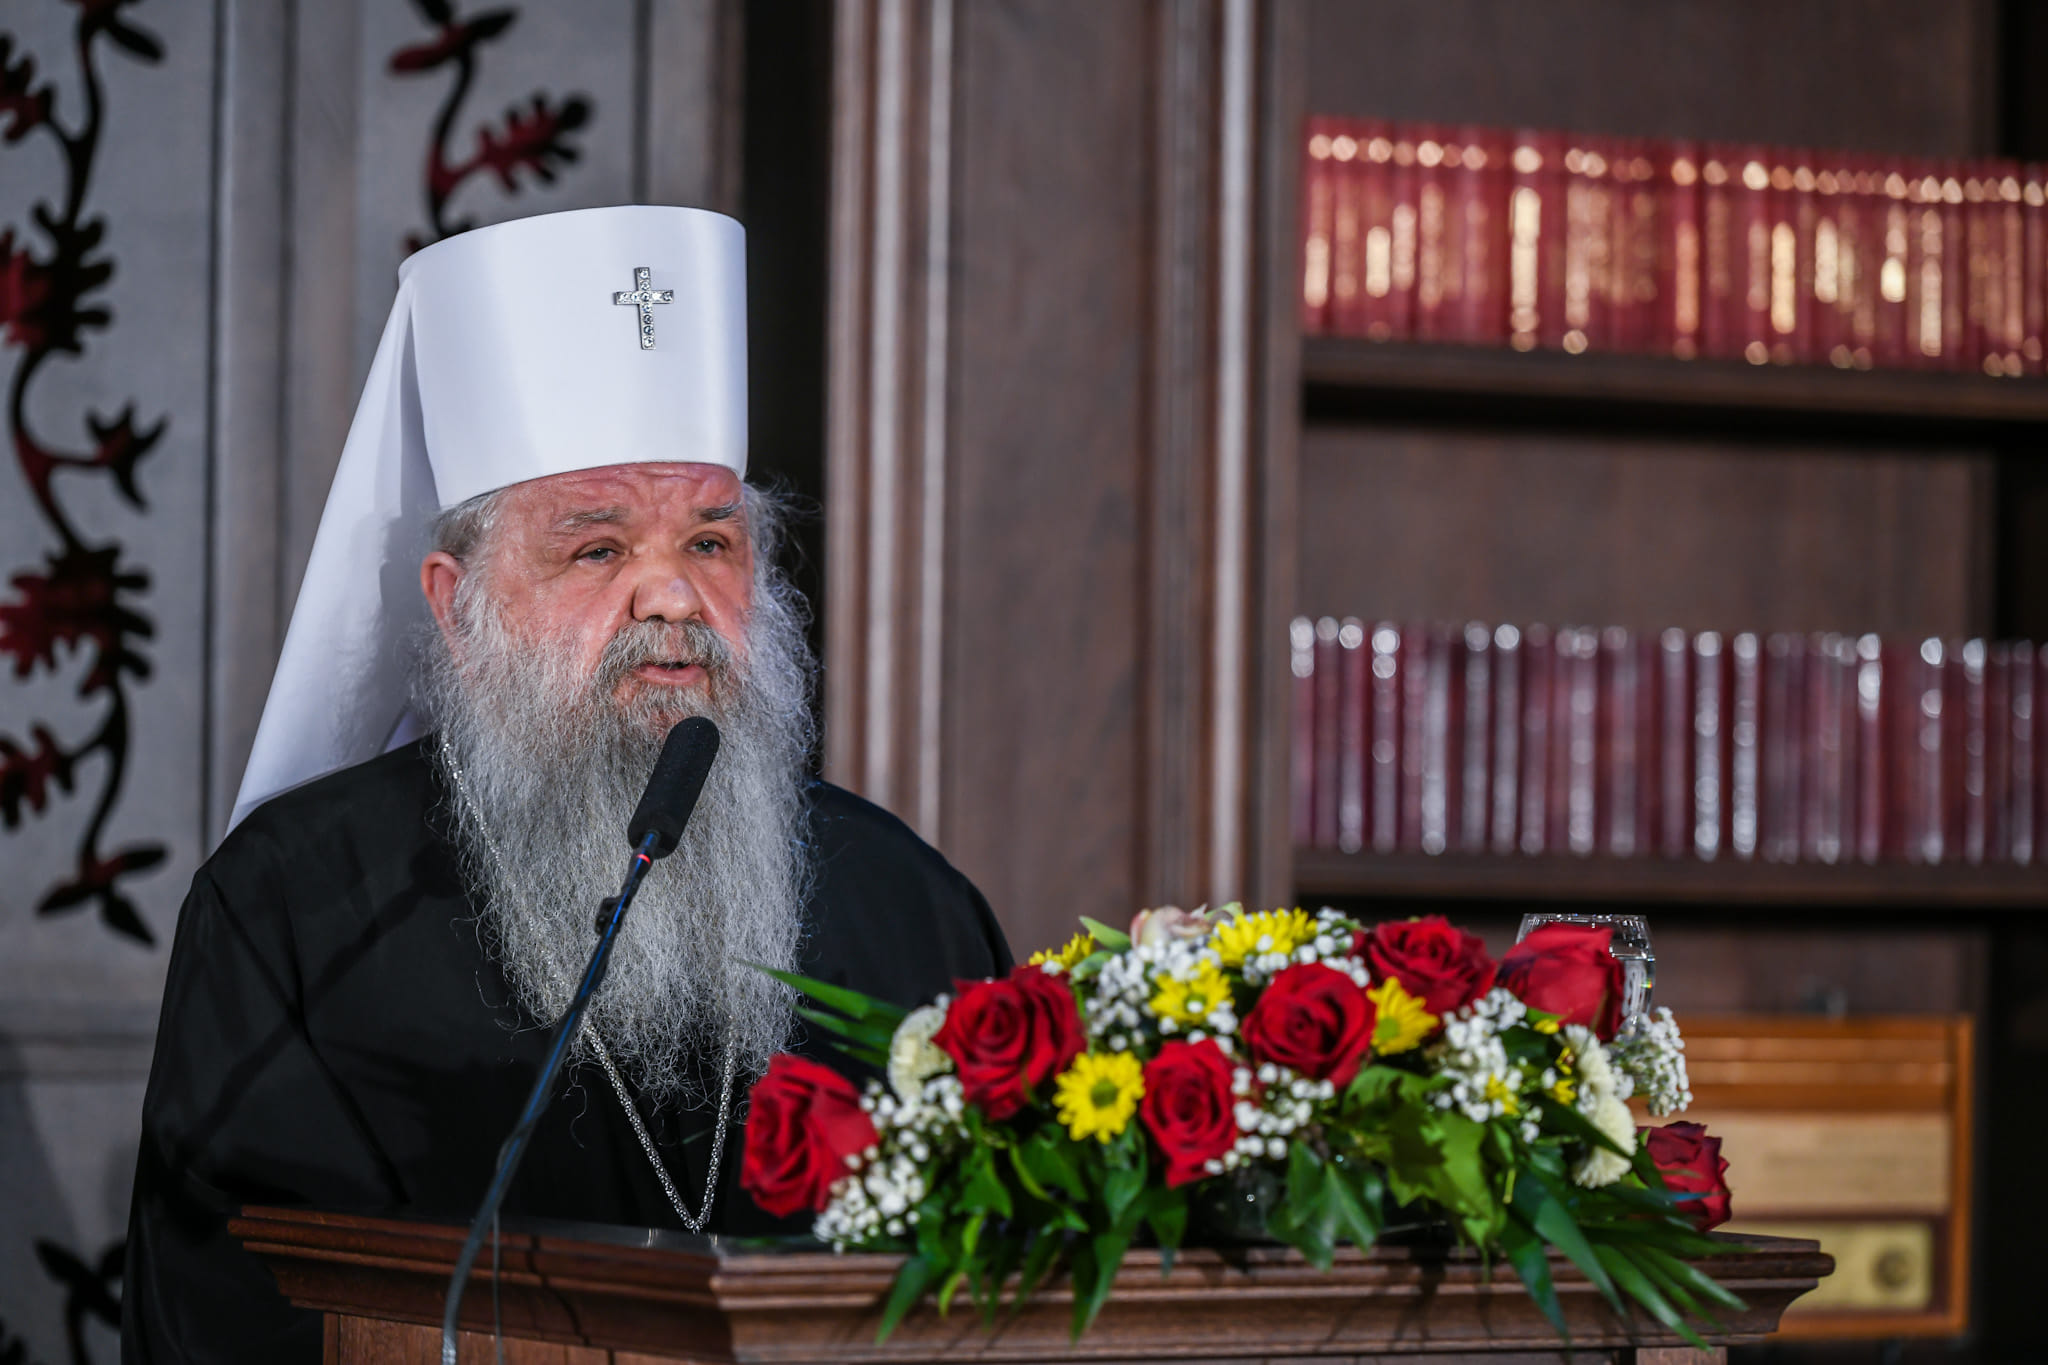 МПЦ го прослави денот на својот патрон со Света архиерејска литургија и Свечена академија